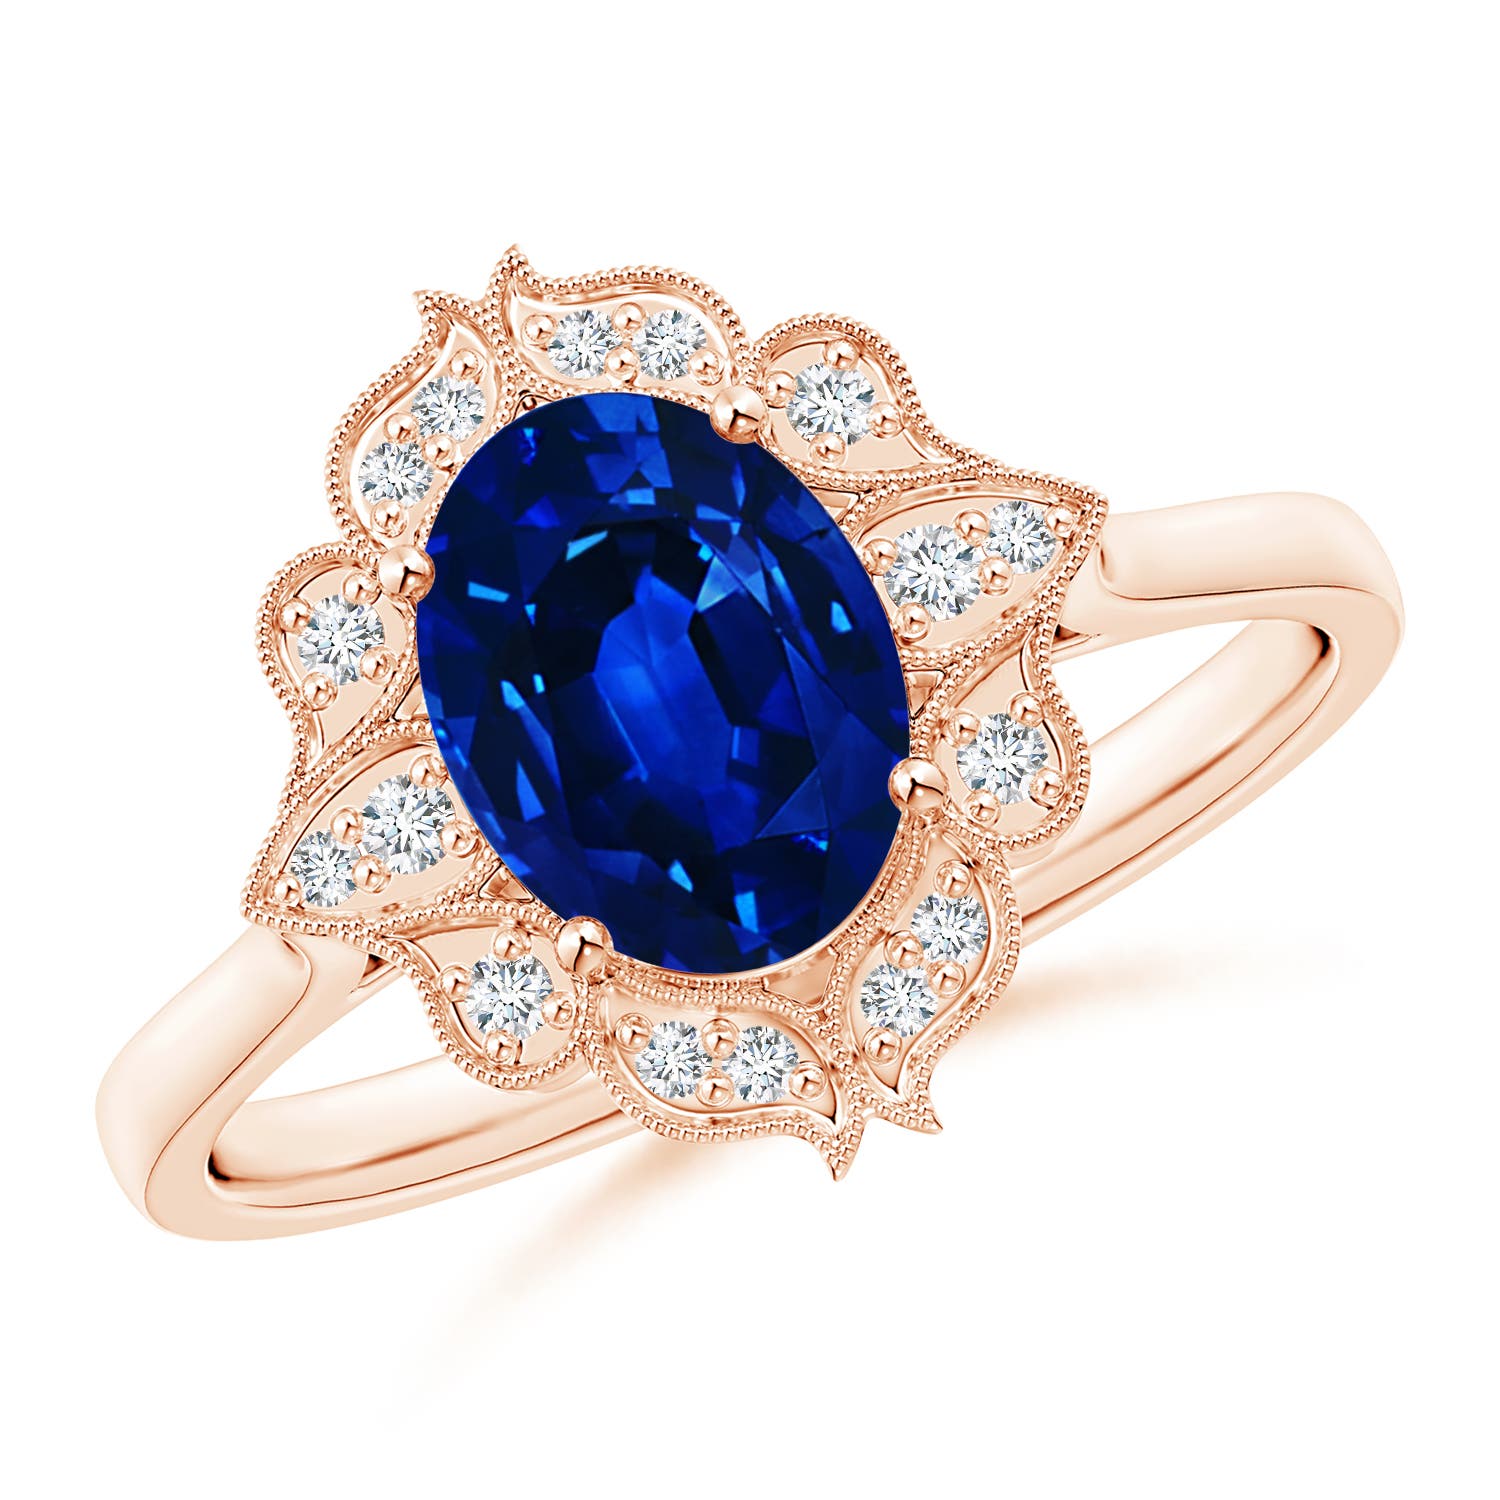 AAAA - Blue Sapphire / 1.65 CT / 14 KT Rose Gold